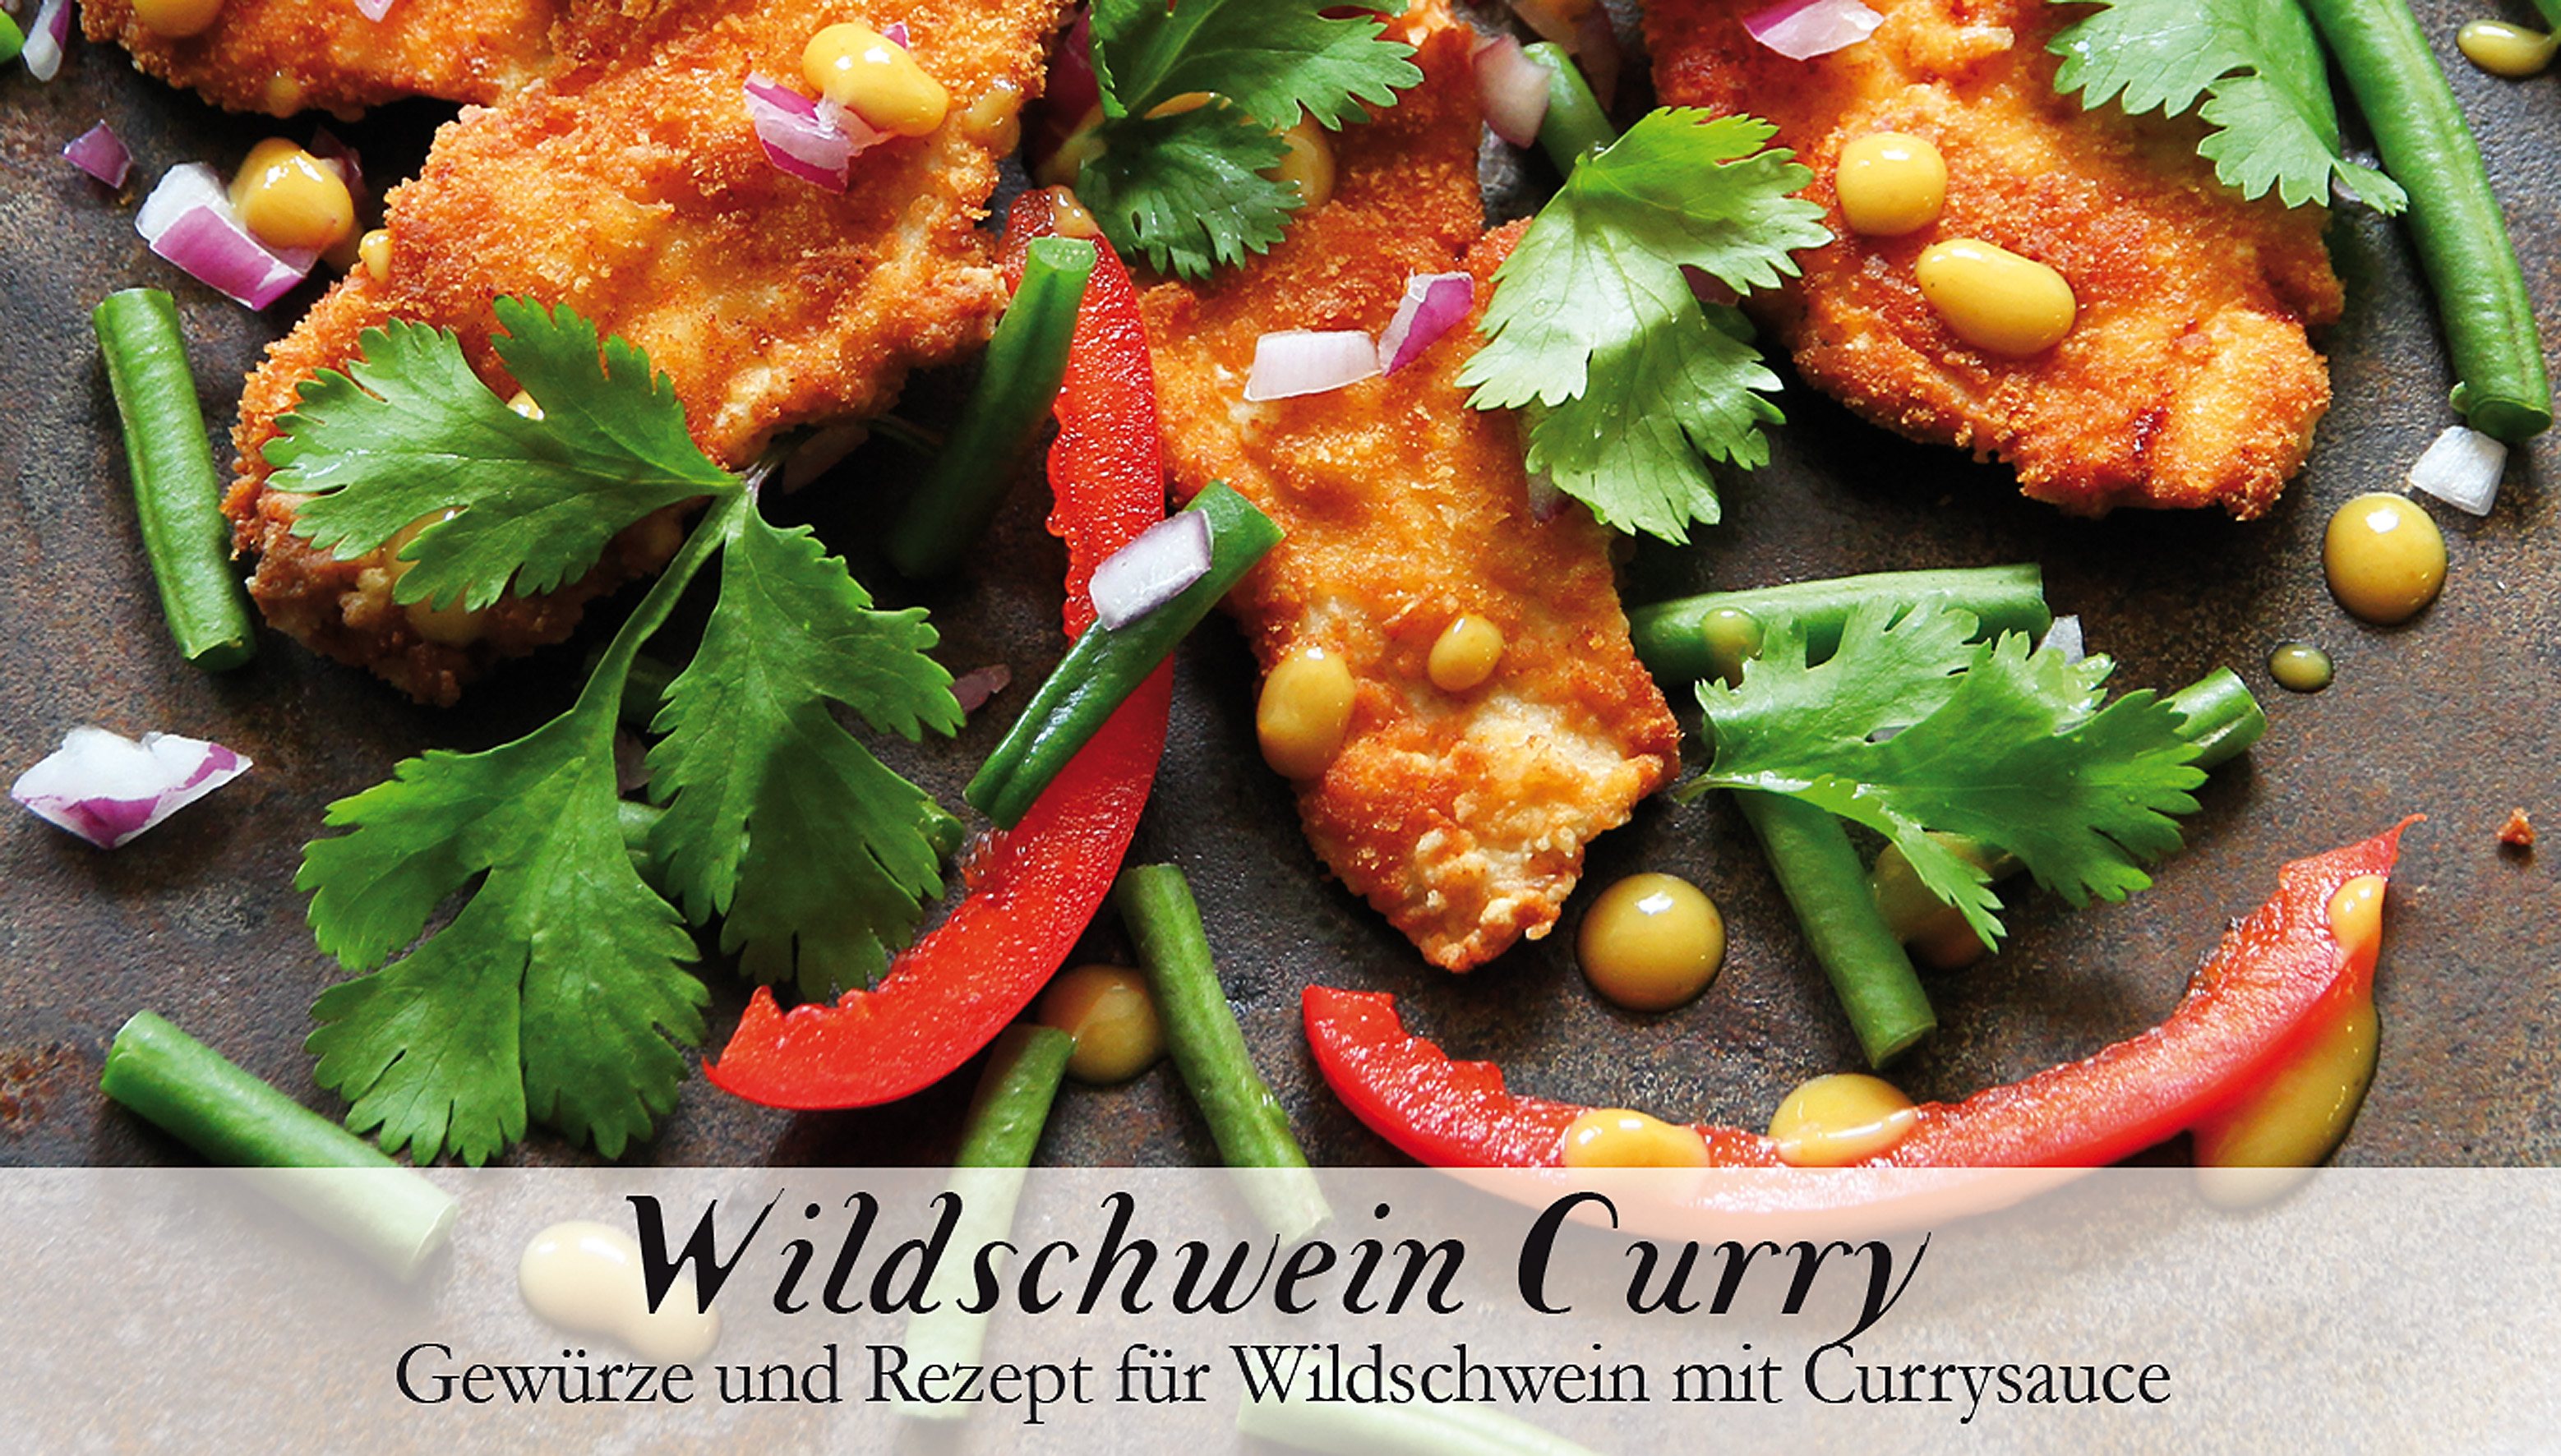 Wildschwein Curry-Gewürzkasten